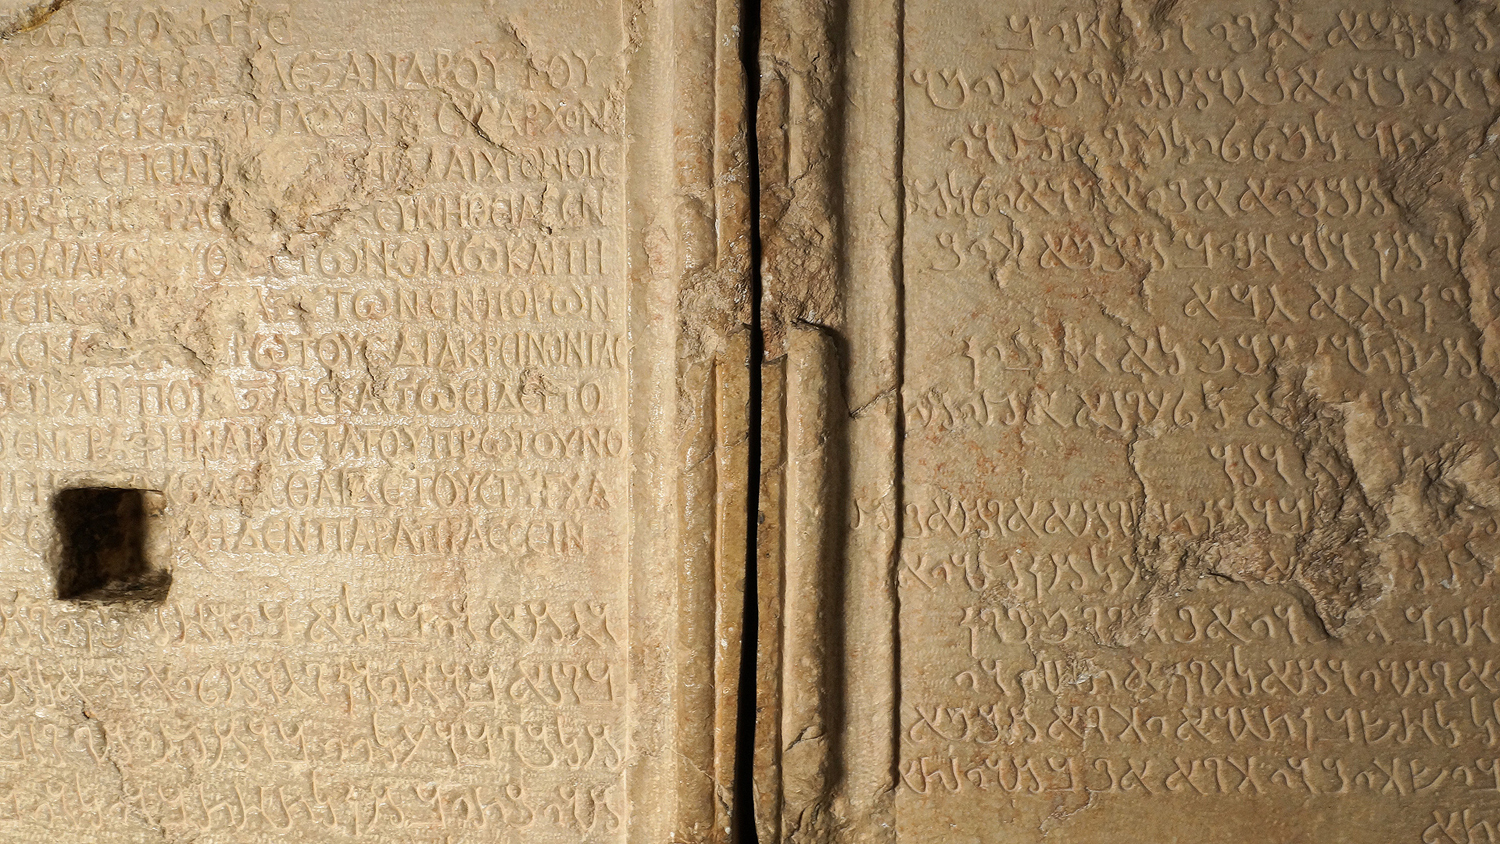 Le tarif douanier de Palmyre conservé au musée de l’Ermitage de Saint-Pétersbourg. 